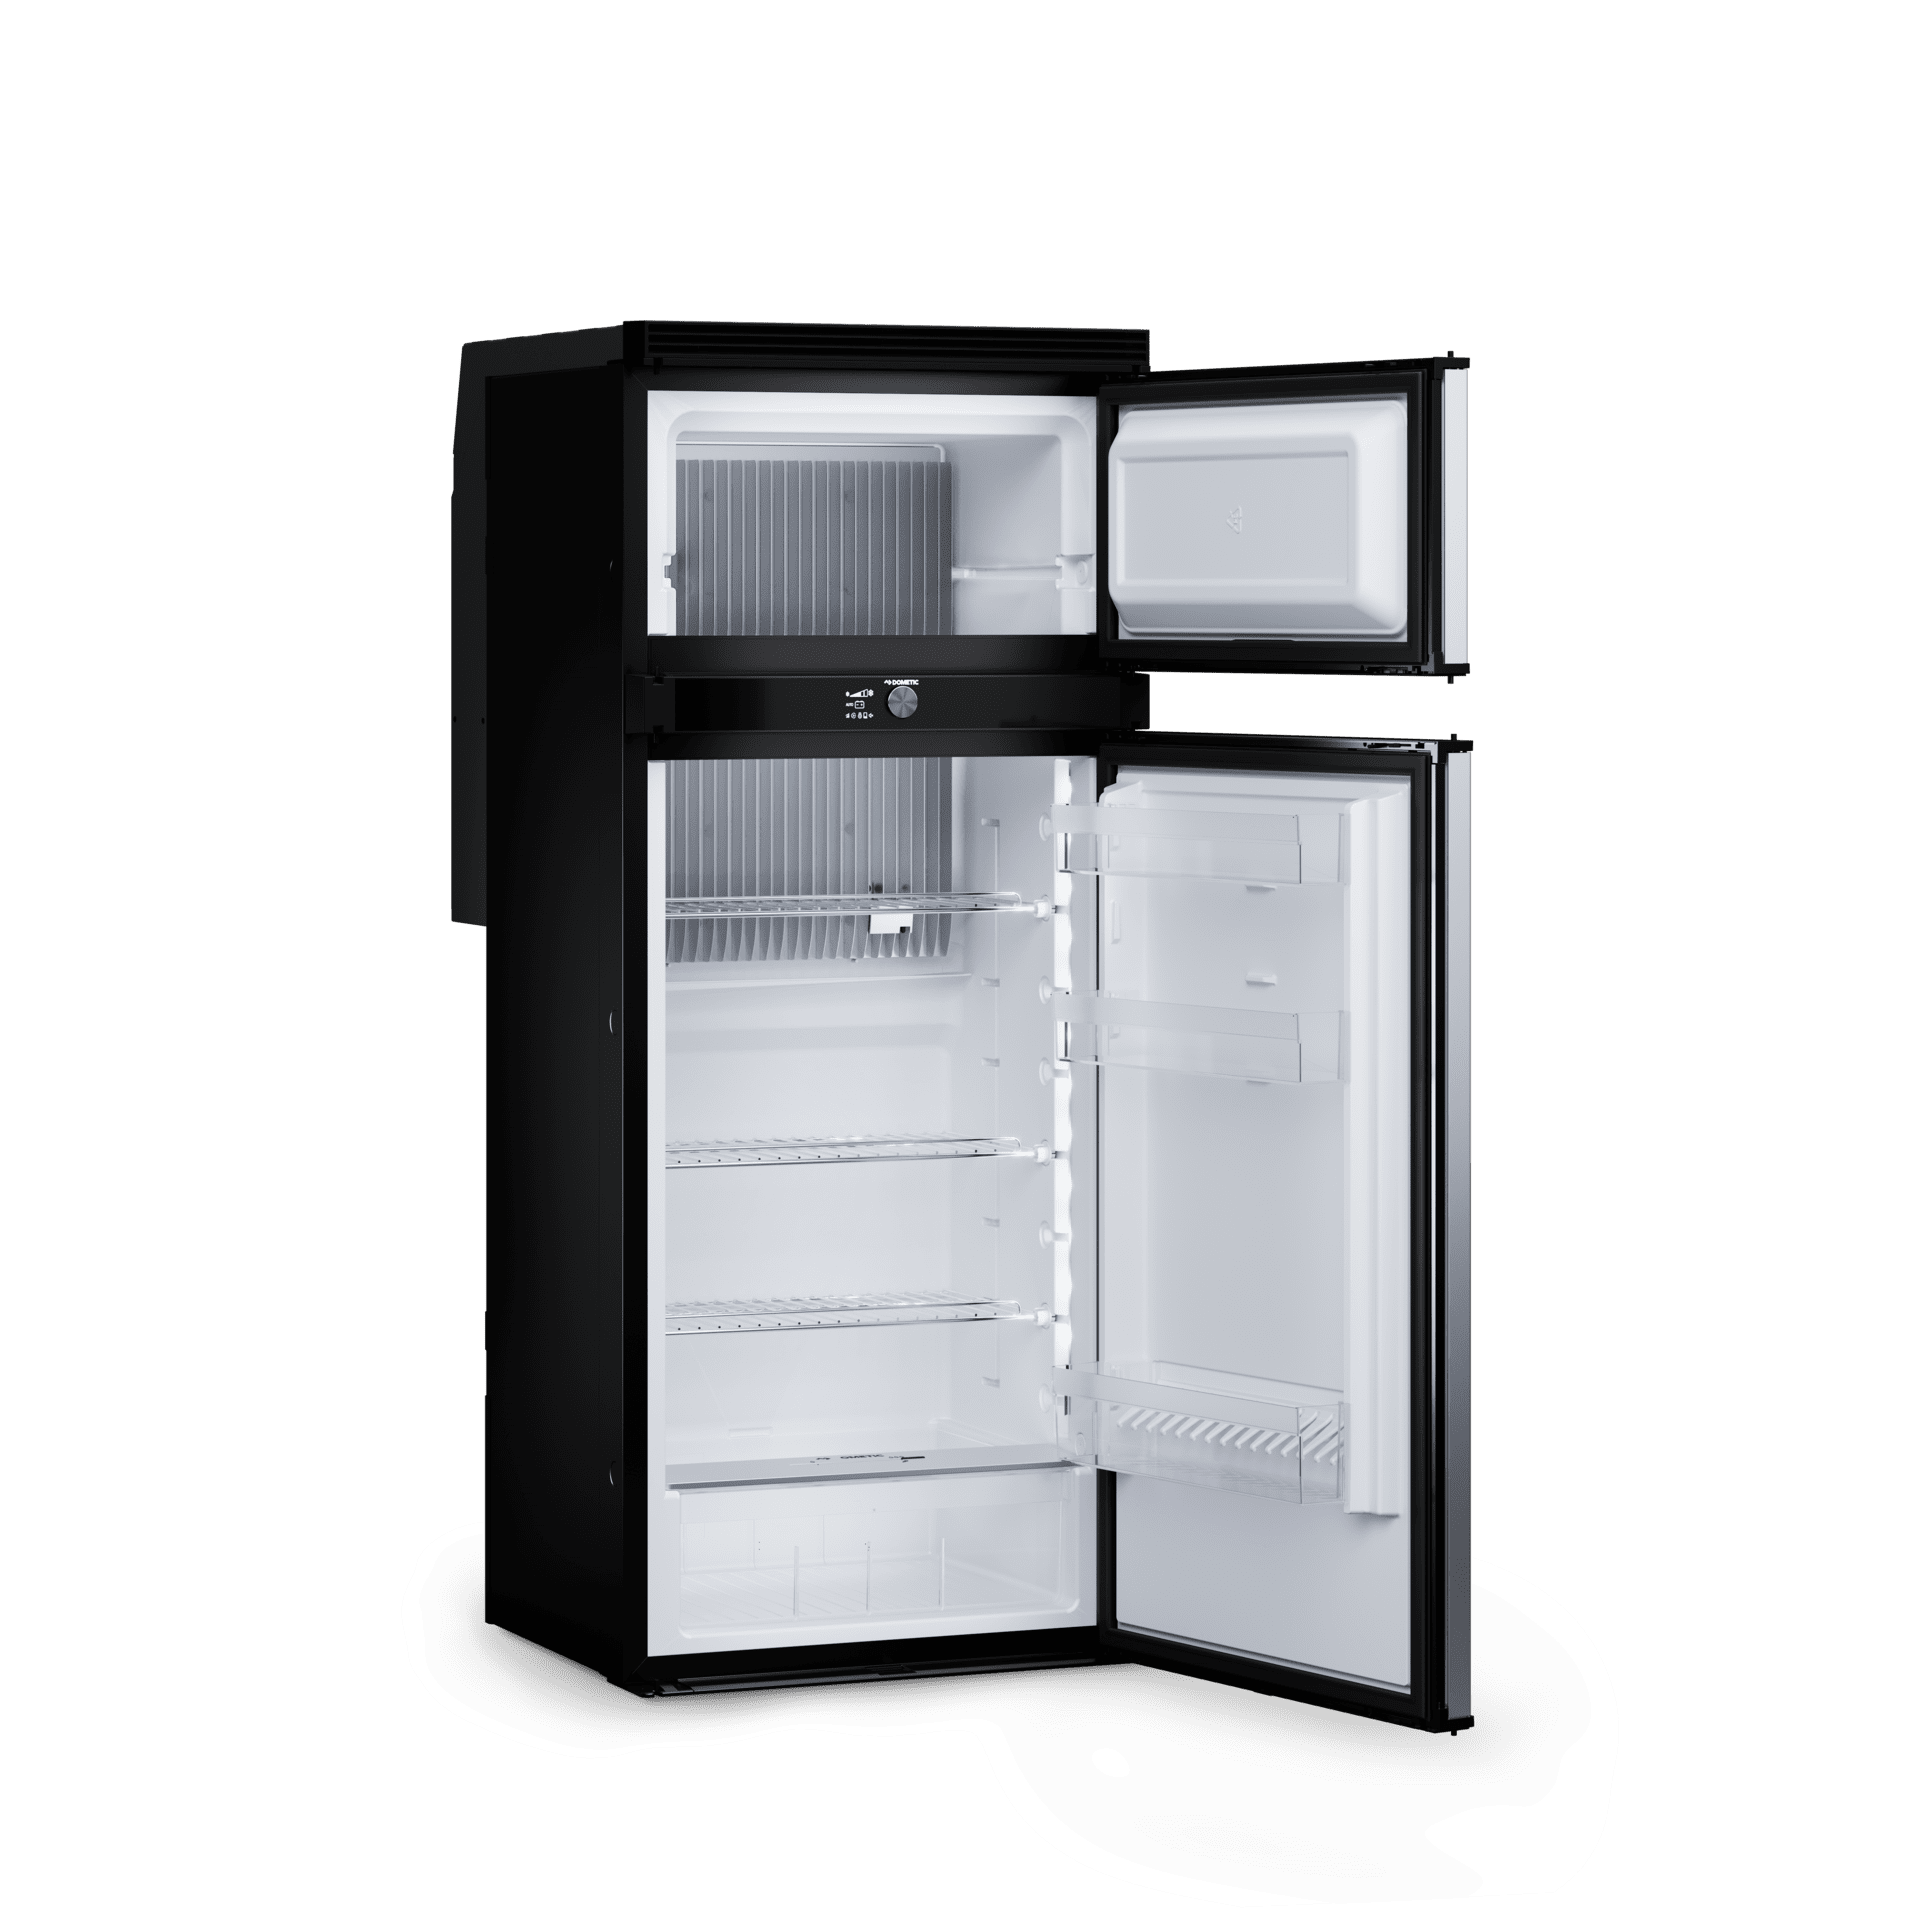 ᐅ Kühlschränke & Aggregate  Dometic - Mobile living made easy